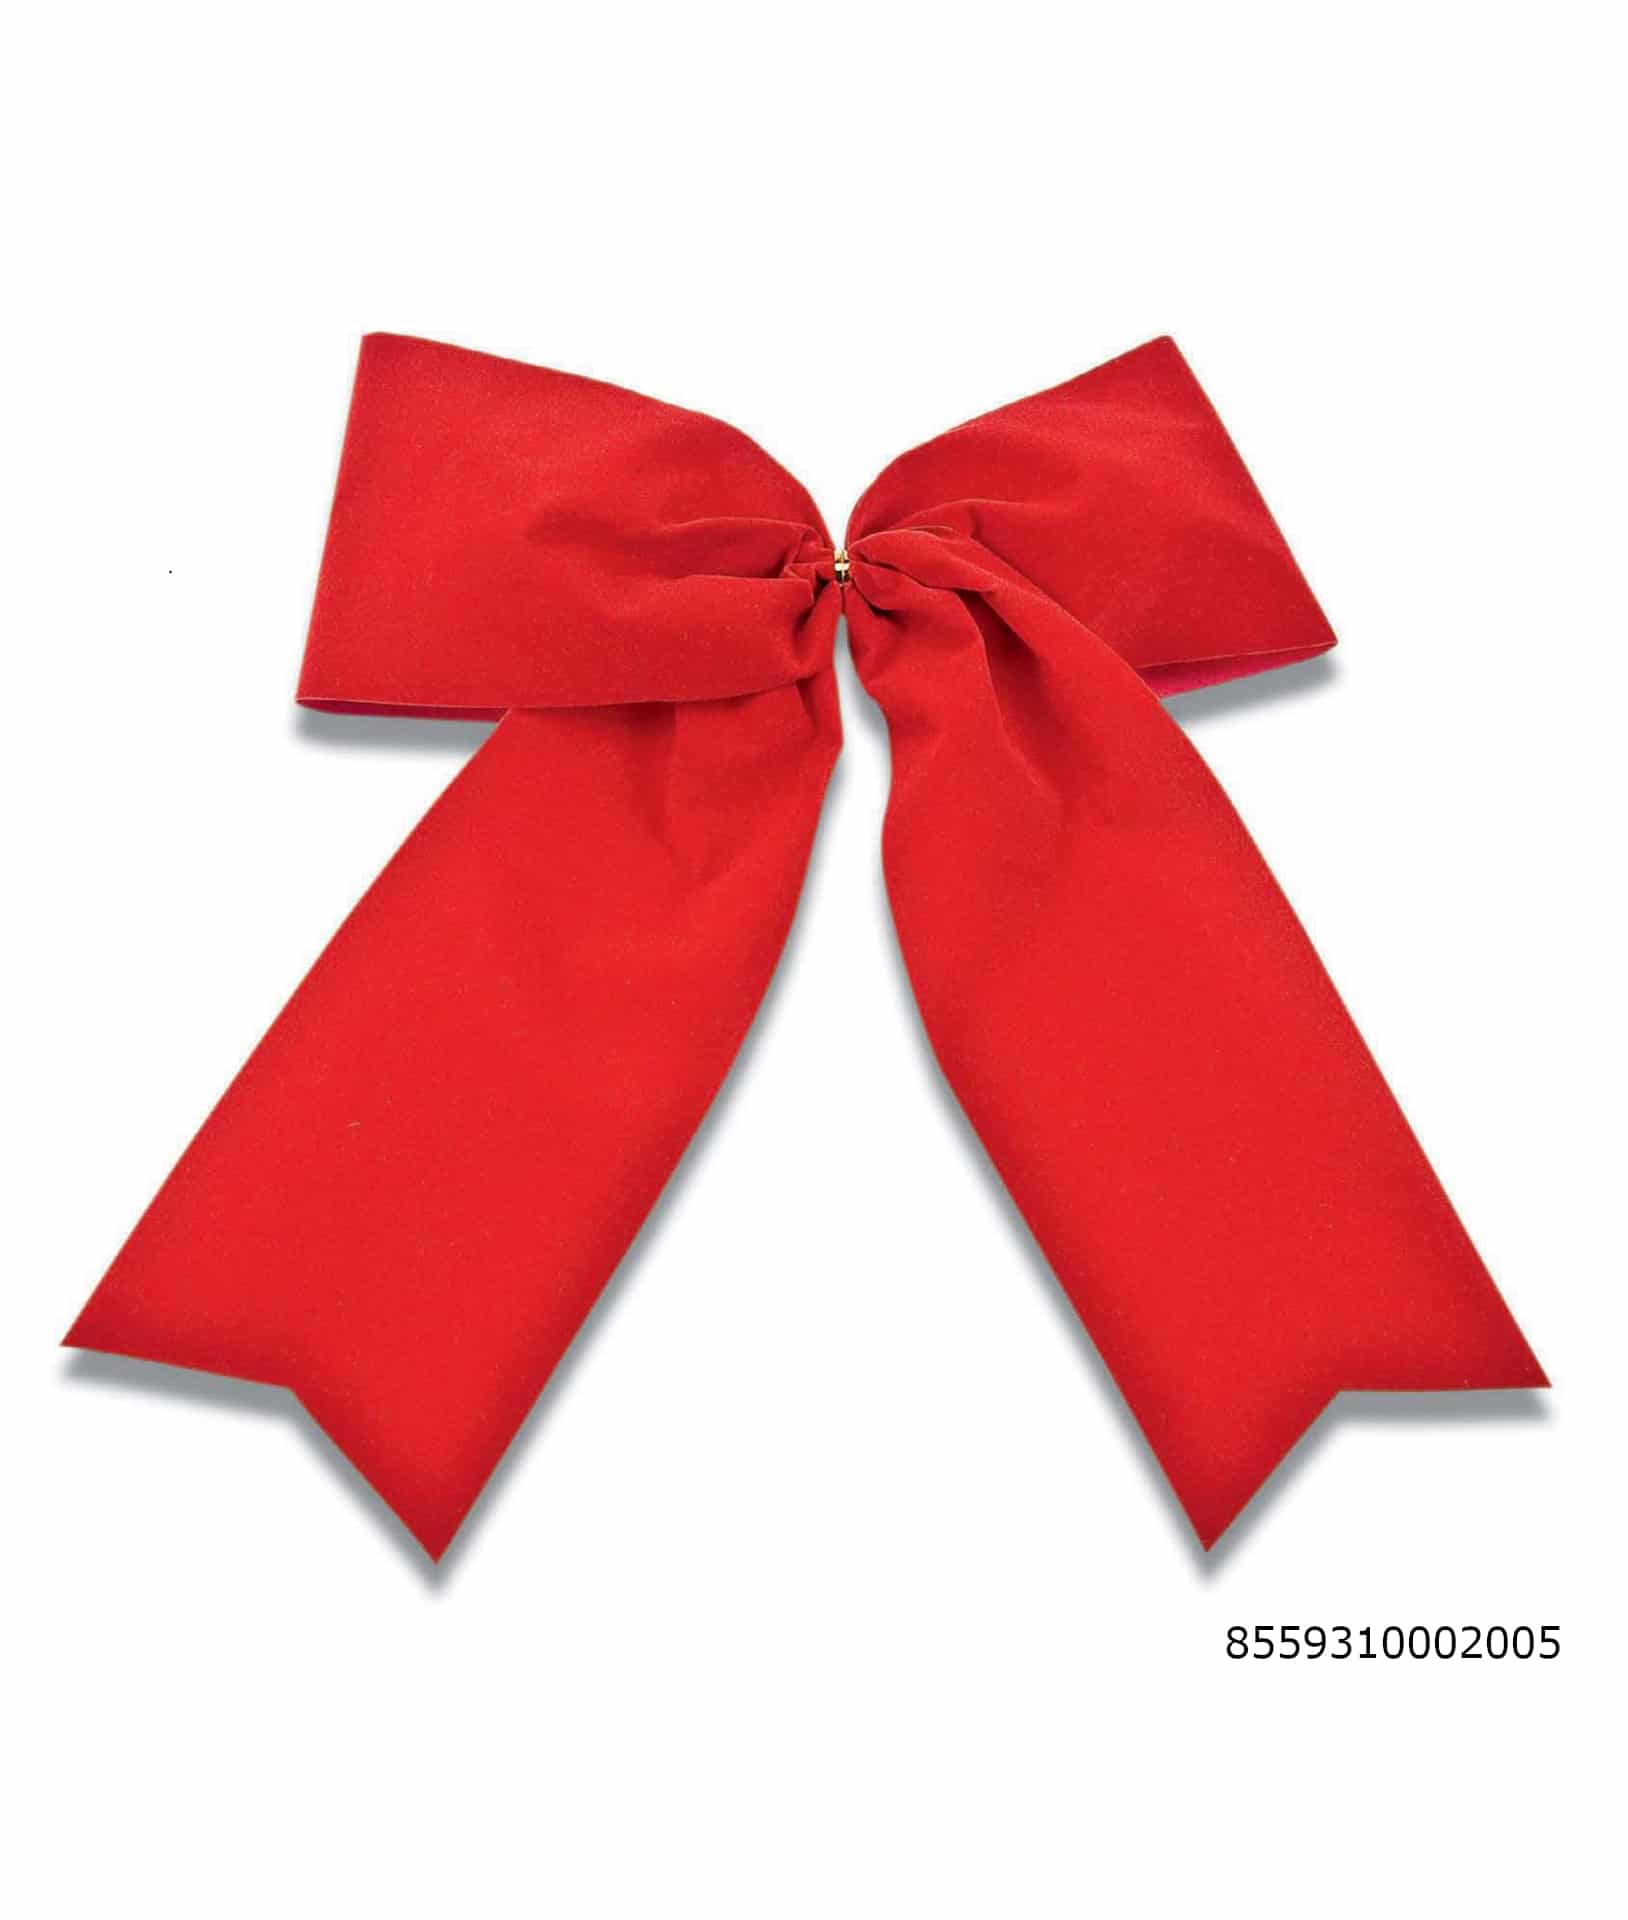 Große Samtschleife rot, Durchmesser ca. 26cm, Outdoor geeignet - weihnachtsbaender, outdoor-bander, fertigschleifen, weihnachtsband-2, geschenkverpackung